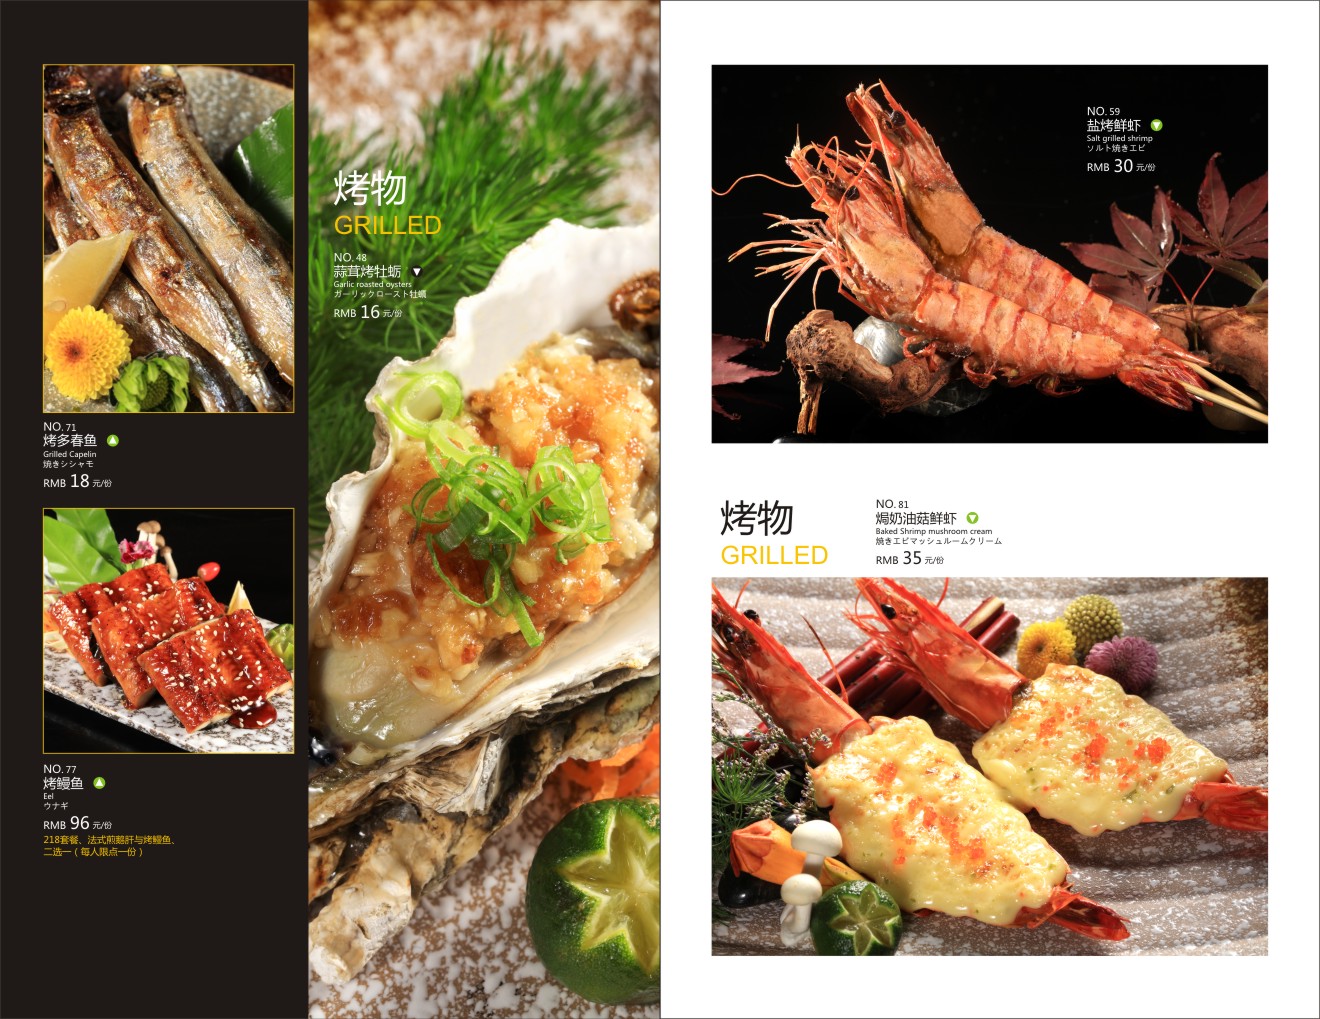 日本料理/海鲜/套餐 日本料理菜谱 西餐厅菜单 海鲜菜谱 满座菜谱